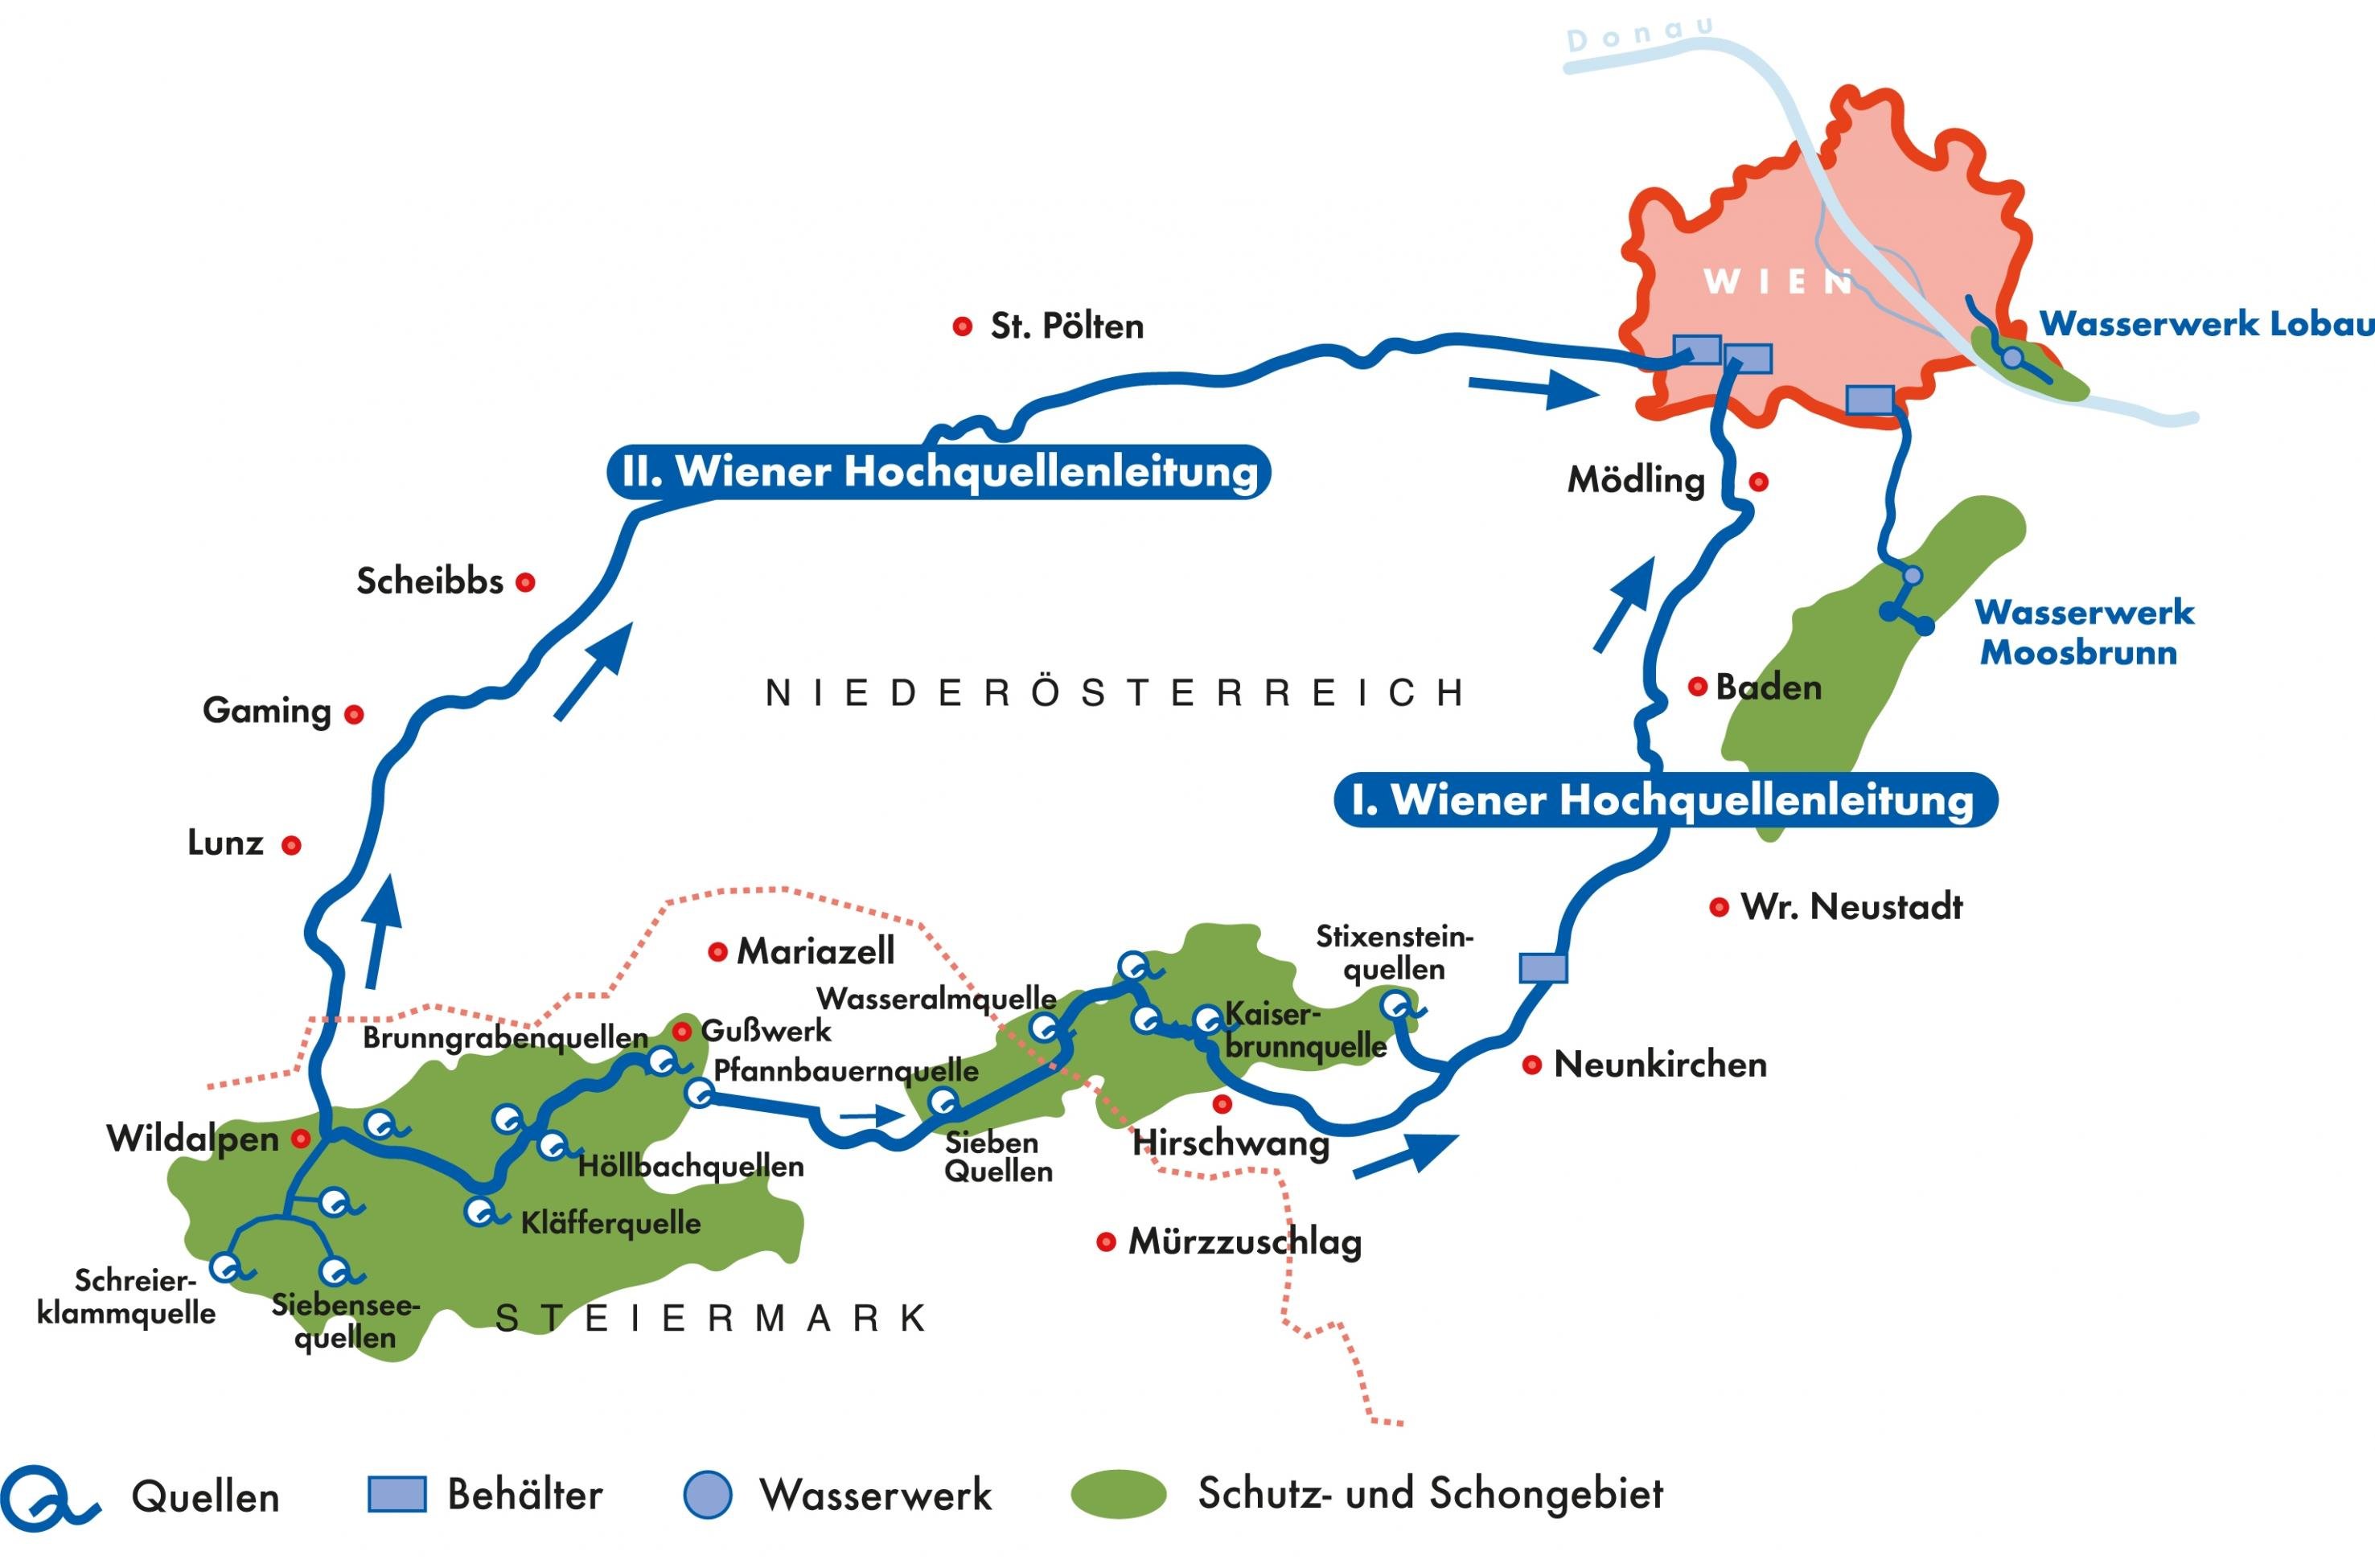 Graphik über den Verlauf der Hochquellenleitungen nach Wien